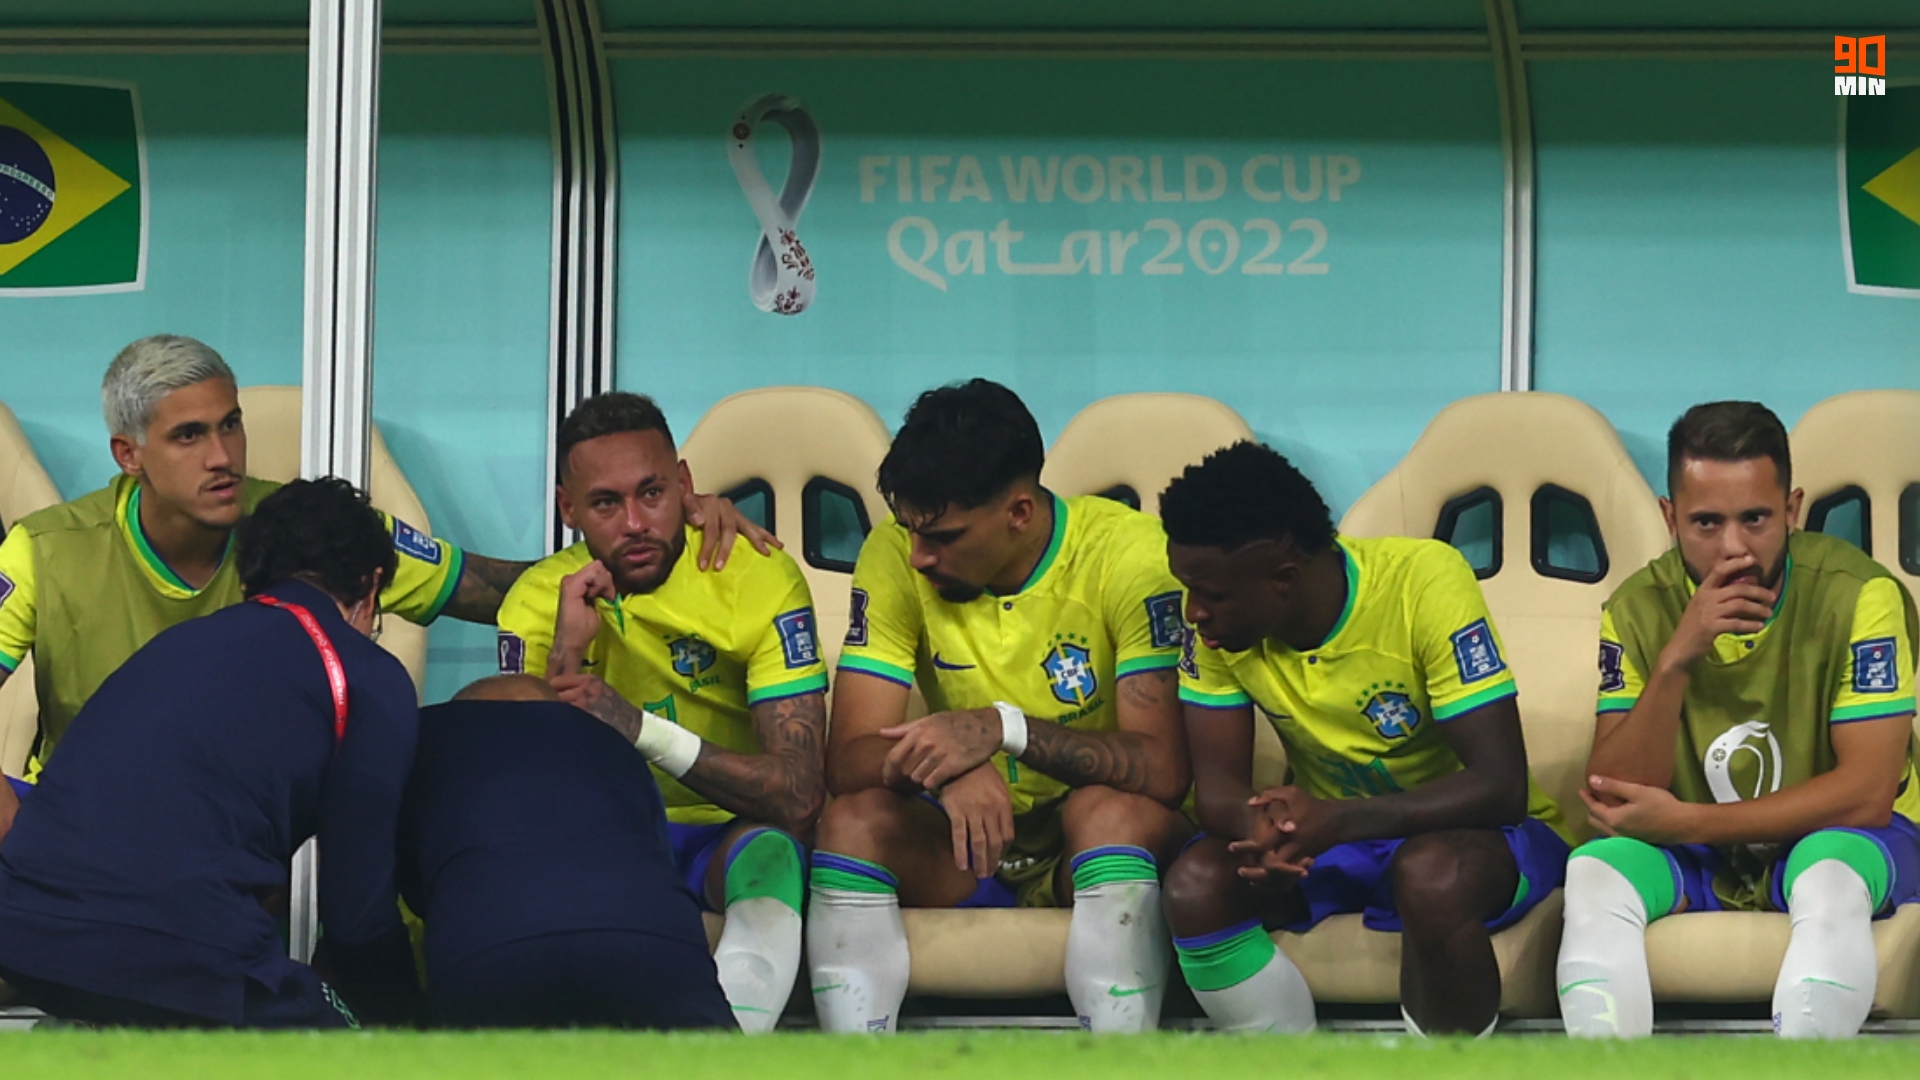 Neymar machucado? Imagem do tornozelo vaza e preocupa torcedores.